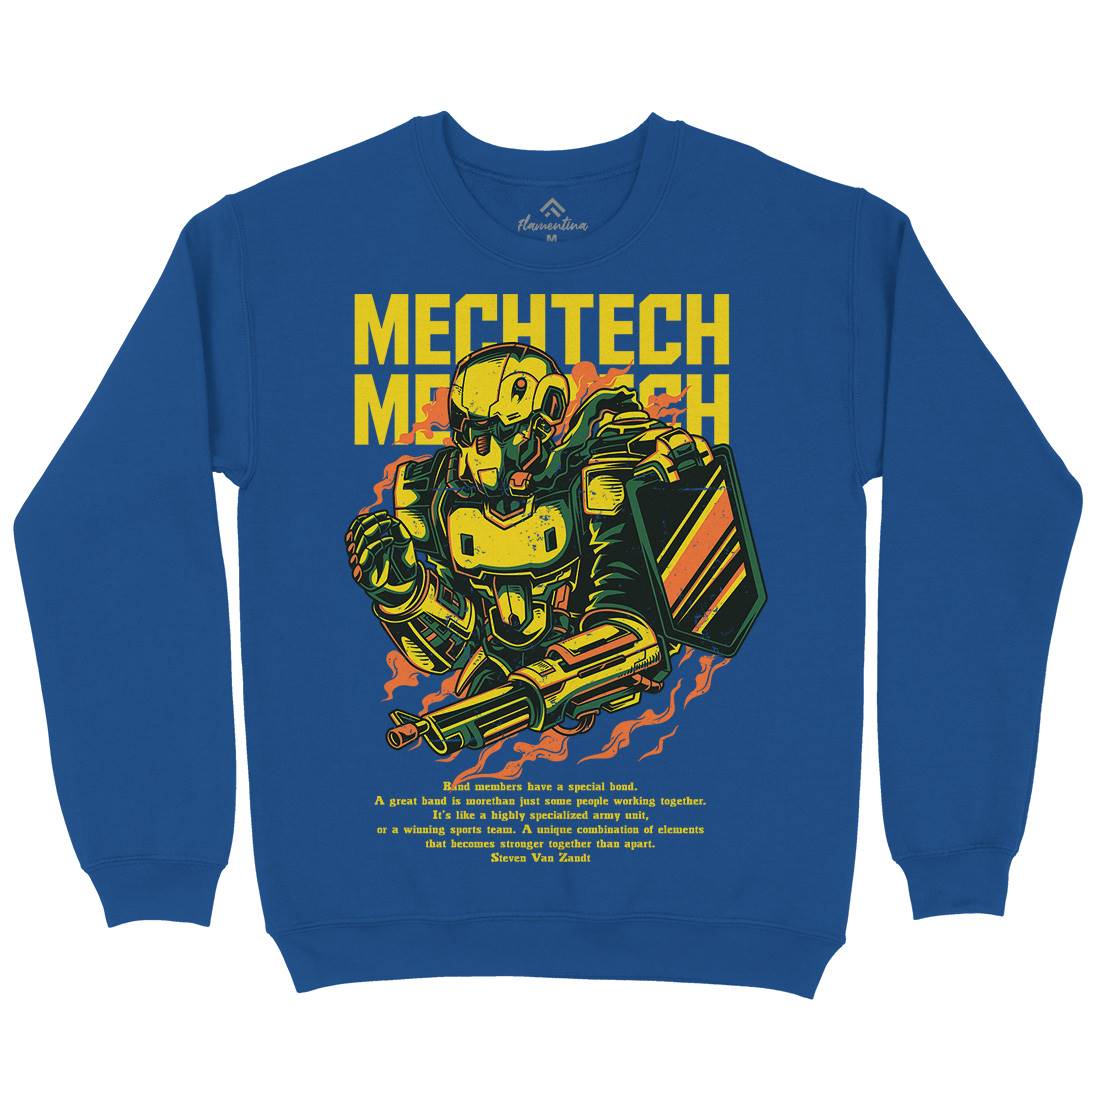 Mech Tech Mens Crew Neck Sweatshirt Army D650